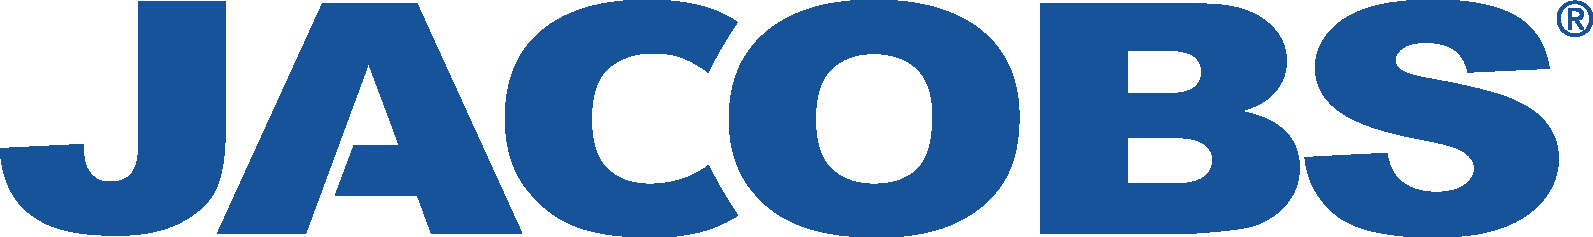 Jacobs Logo [Engineering] Download Vector